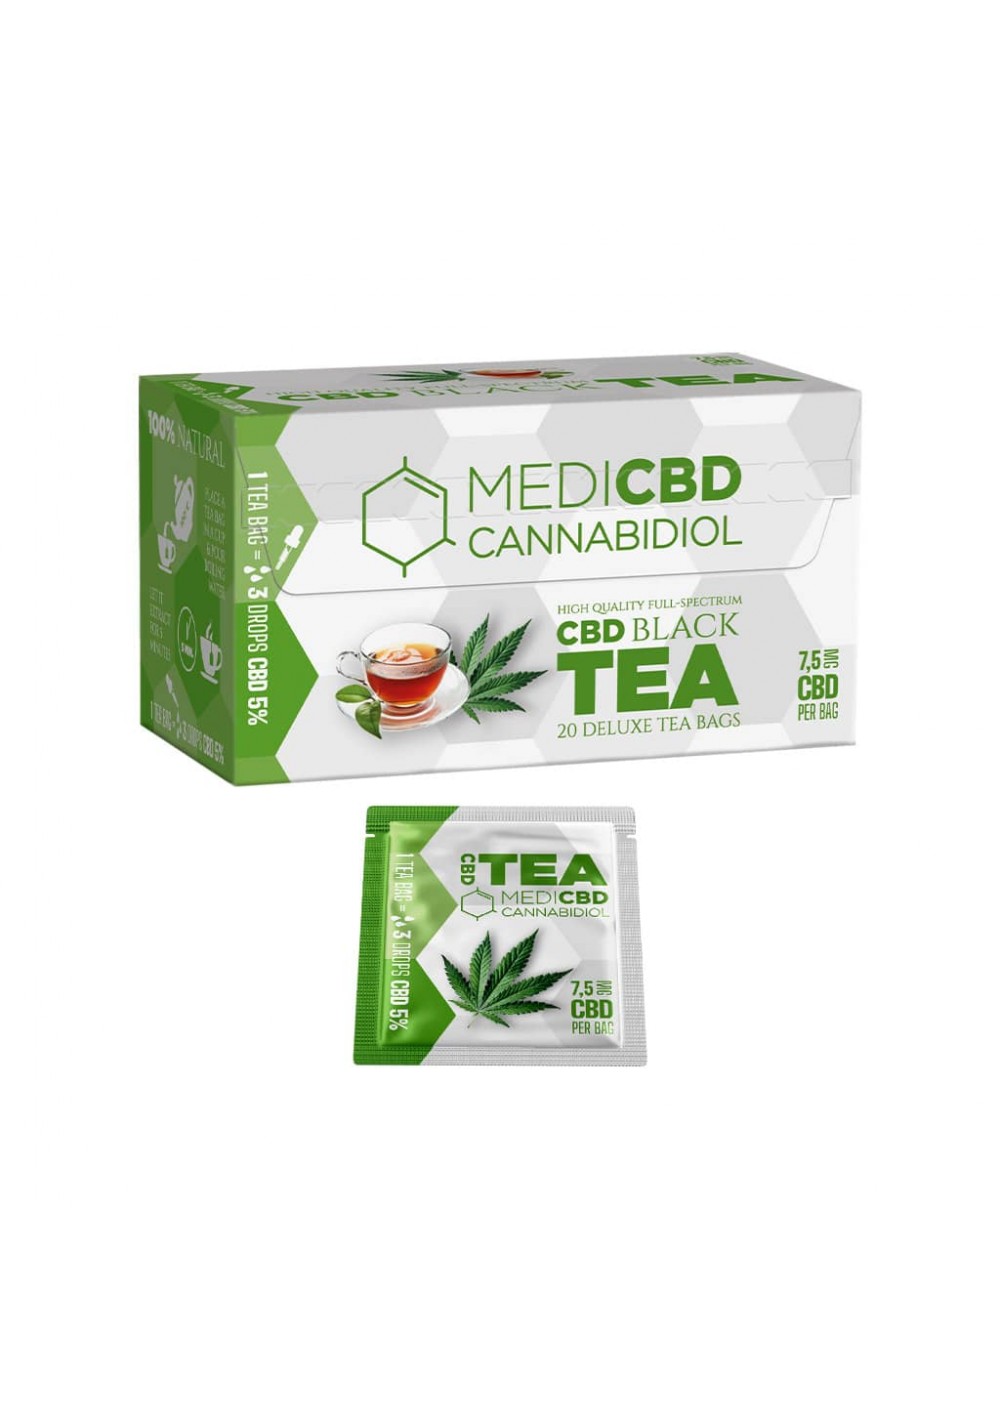 Tè Nero alla Cannabis con 7.5mg CBD per bustina, 20 bustine, senza THC - MediCBD